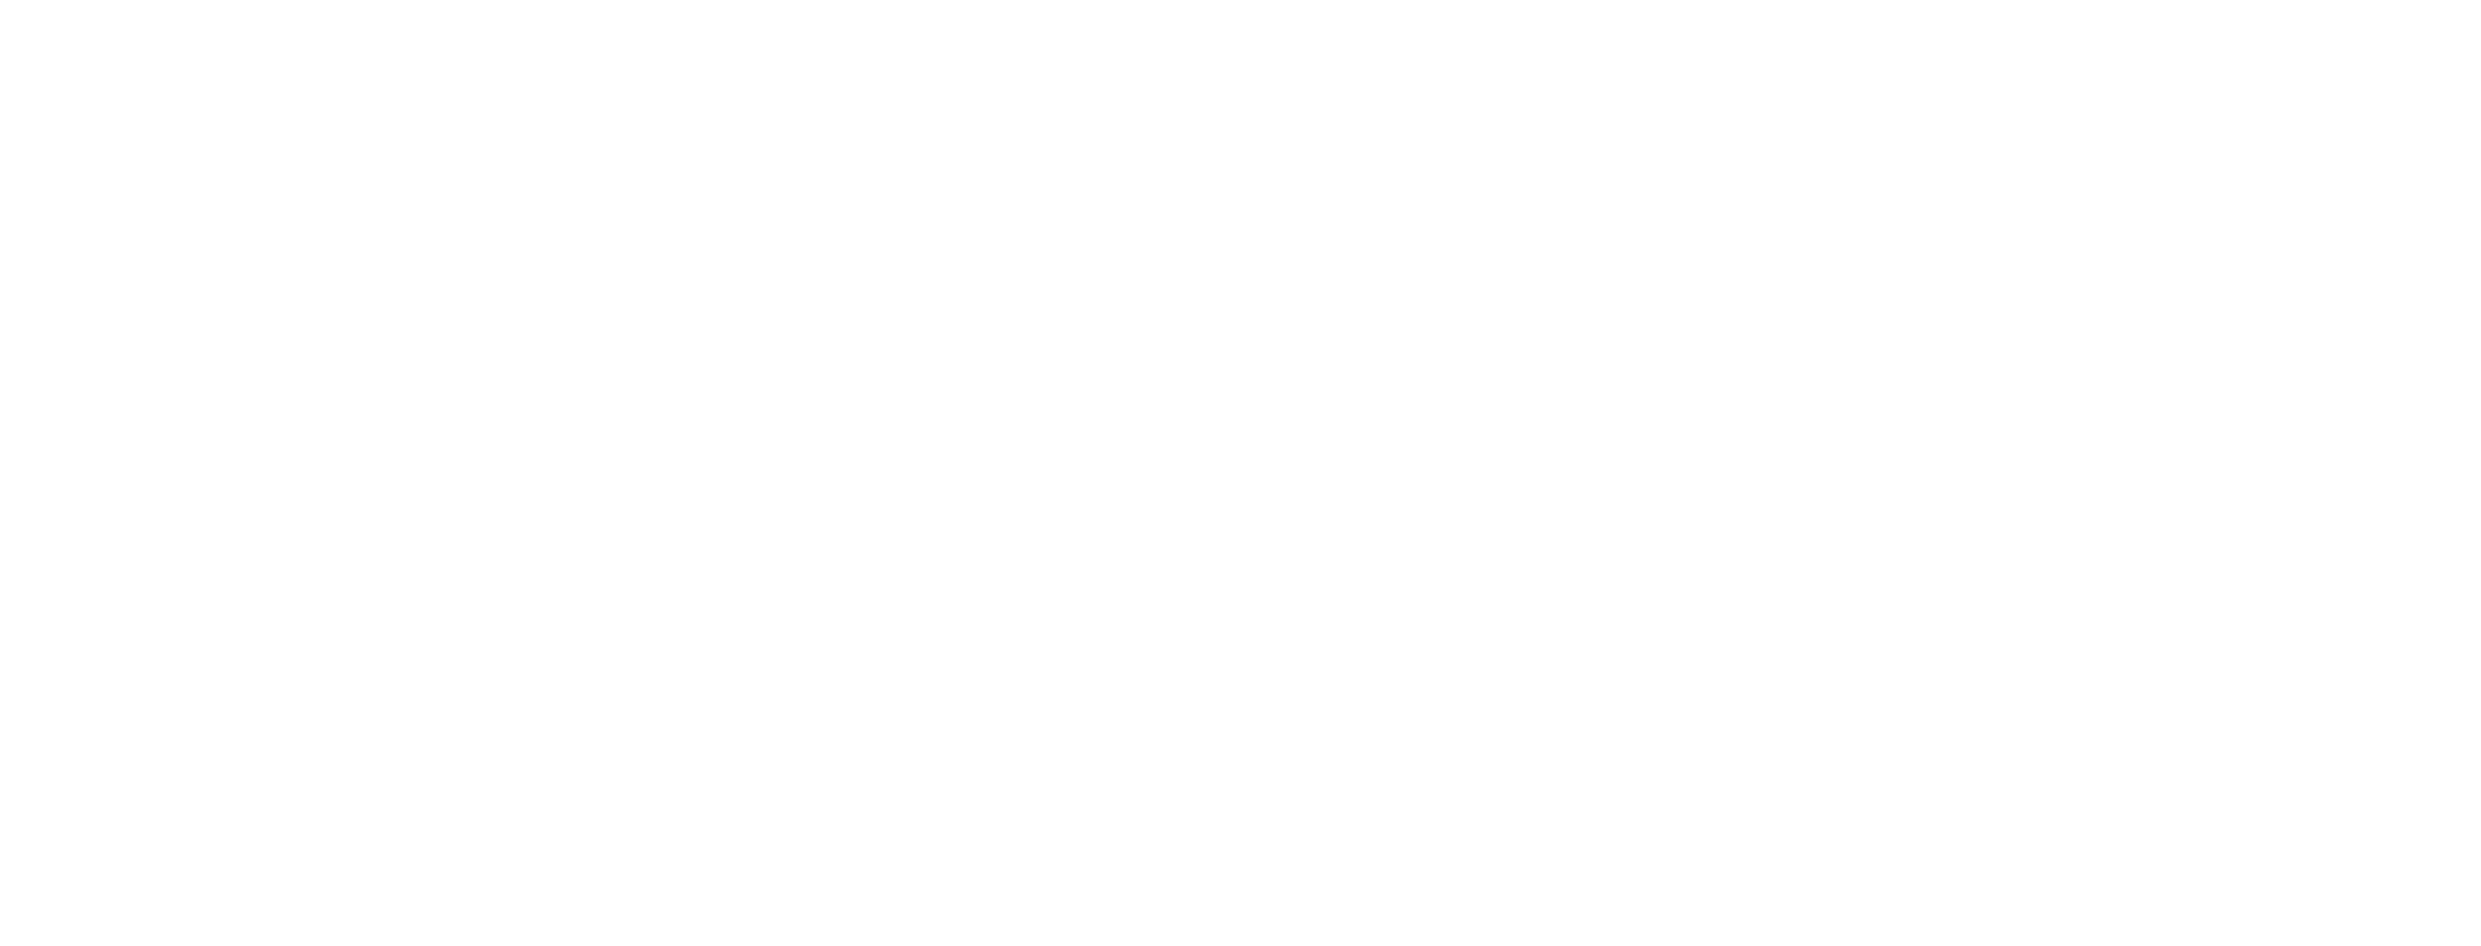 digitalswitzerland_unterlogo_leap_weiss-1